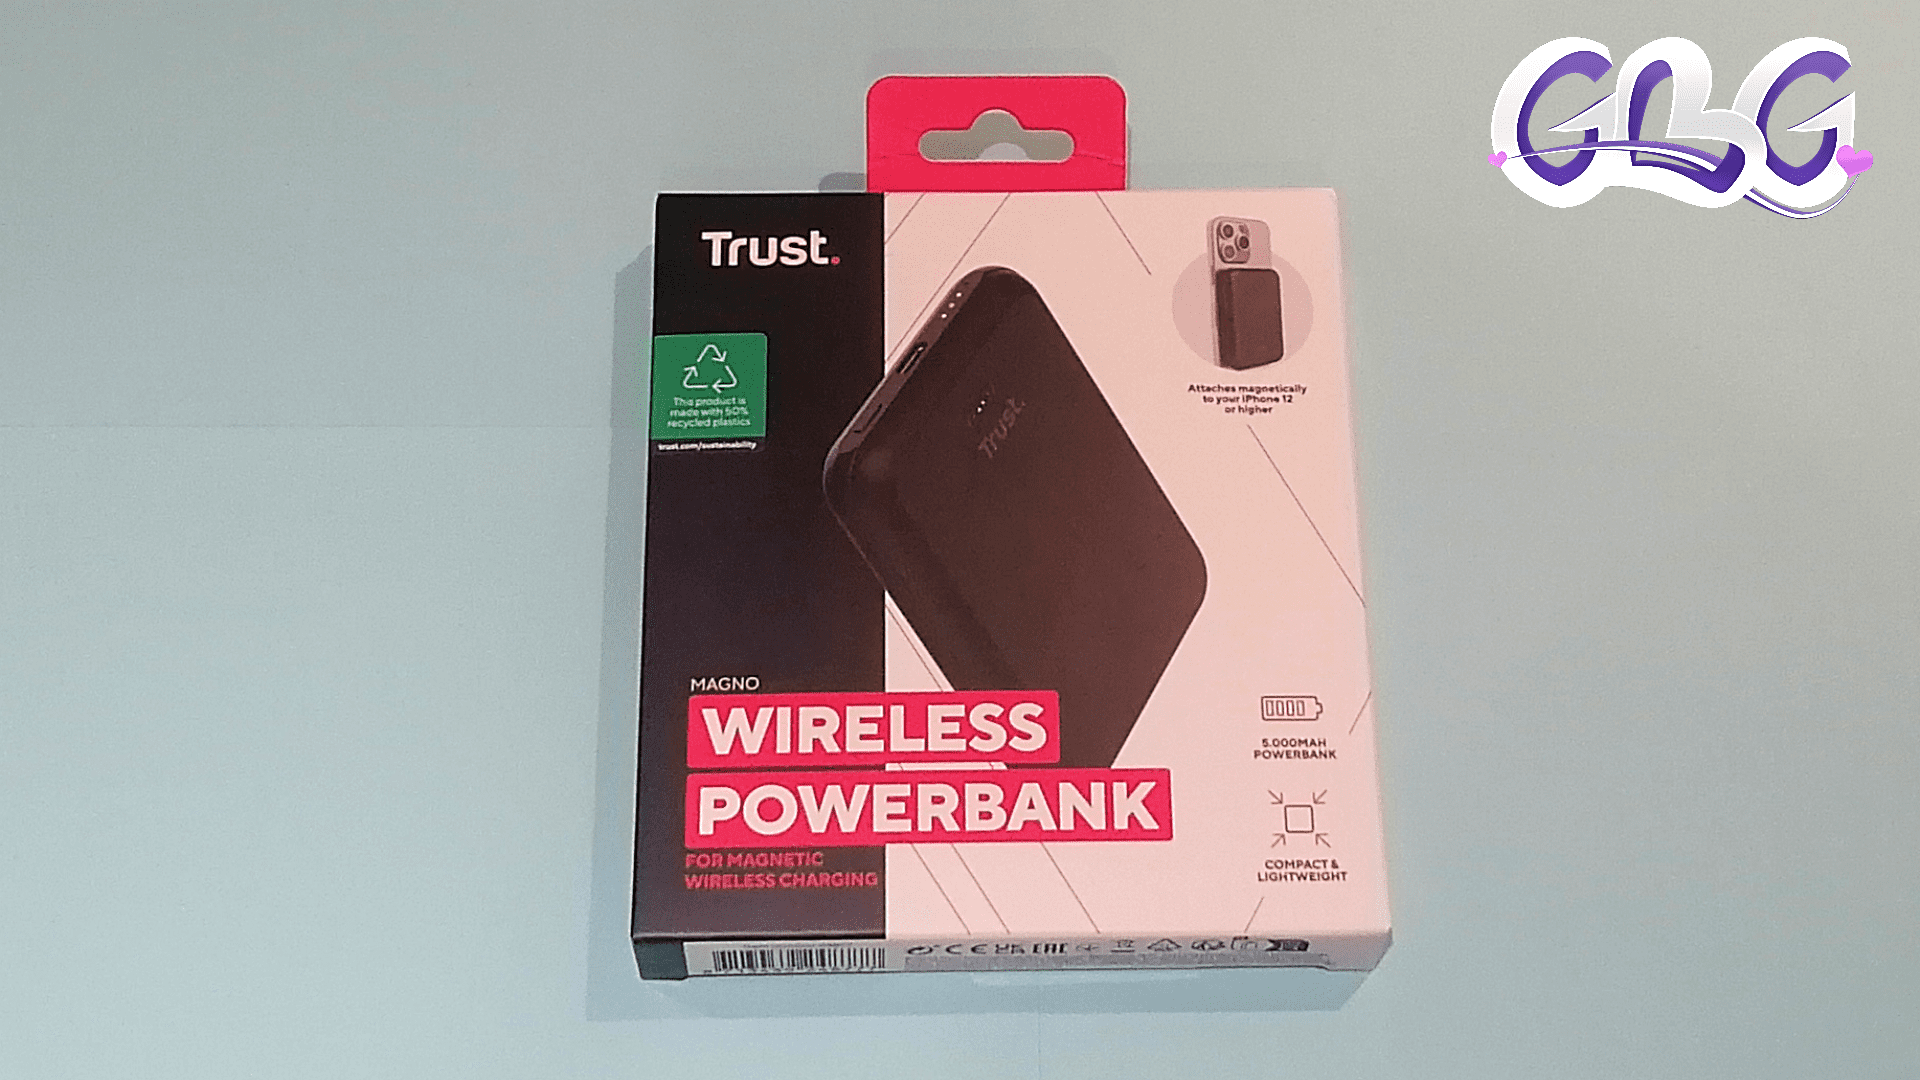 Emballage du " Magno Wireless Powerbank" recto